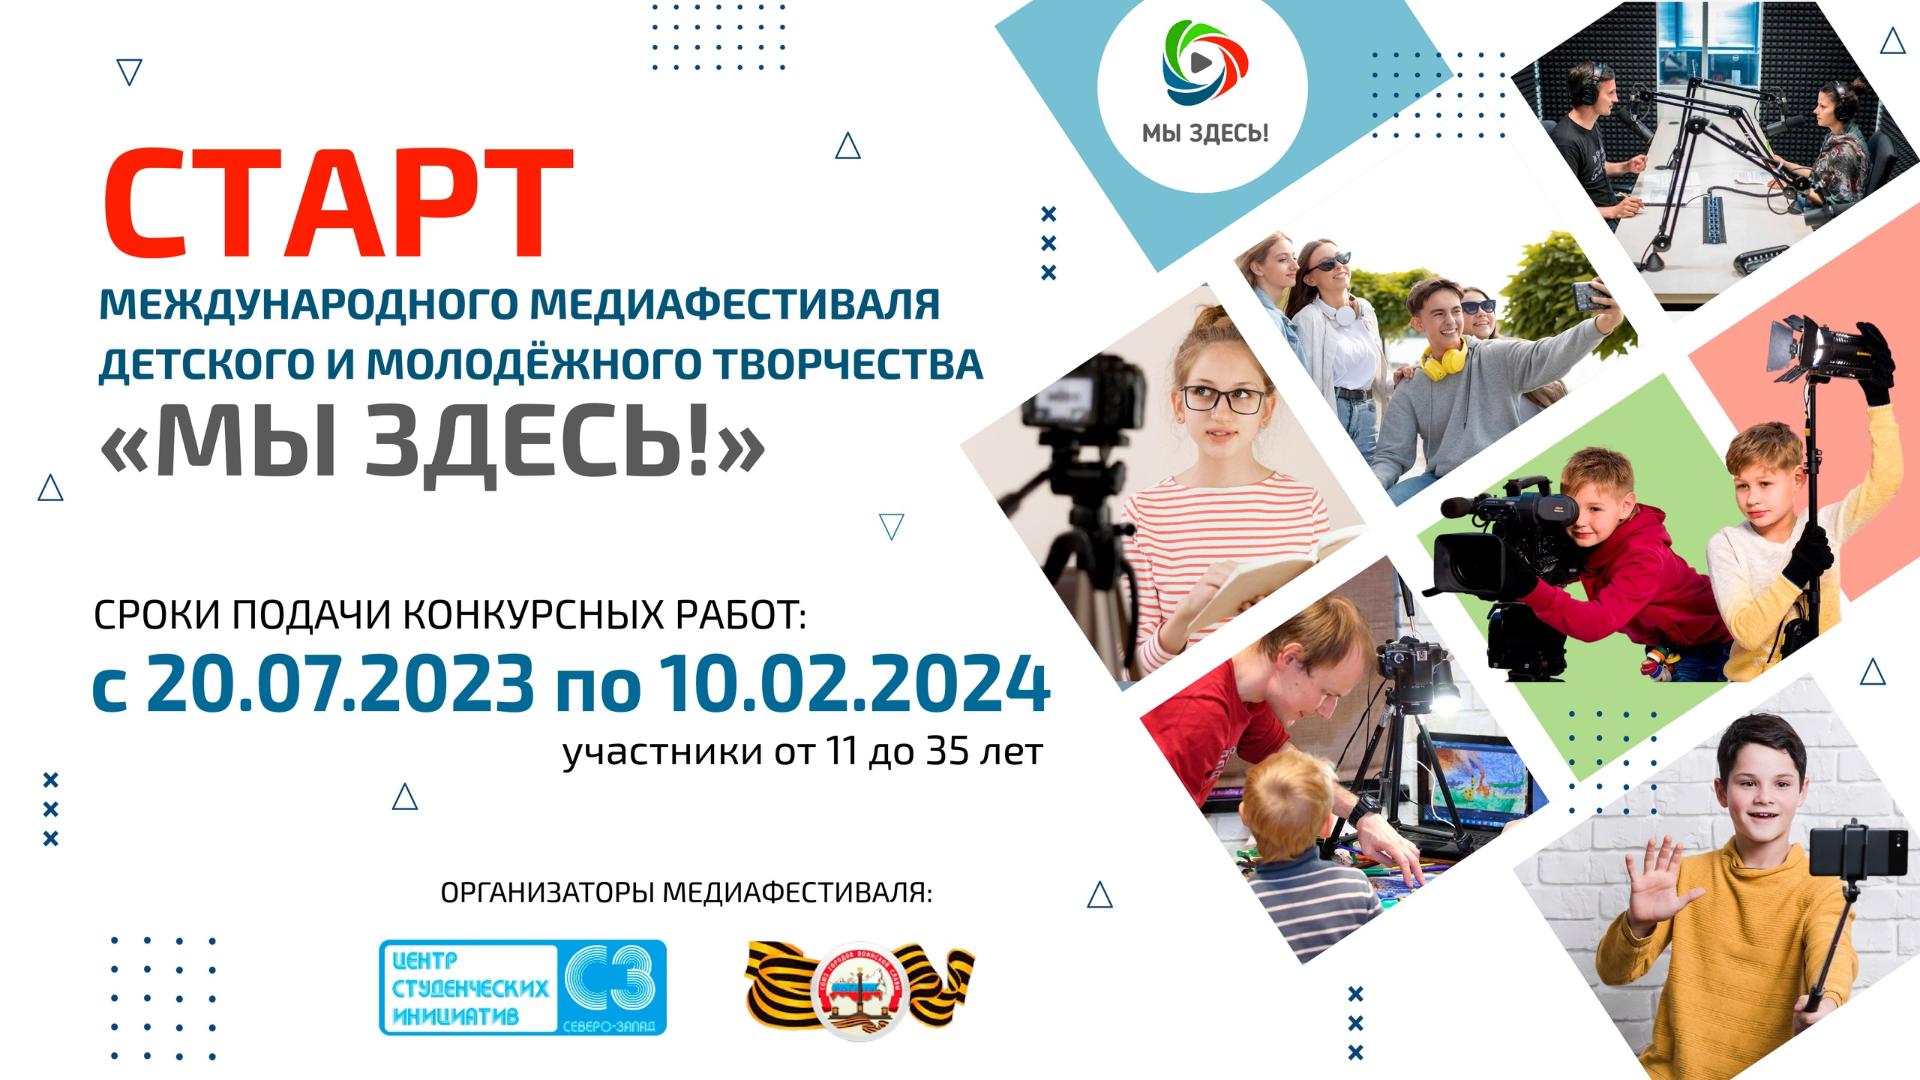 Жителей Ленинградской области приглашают к участию в медиафестивале «Мы Здесь!»